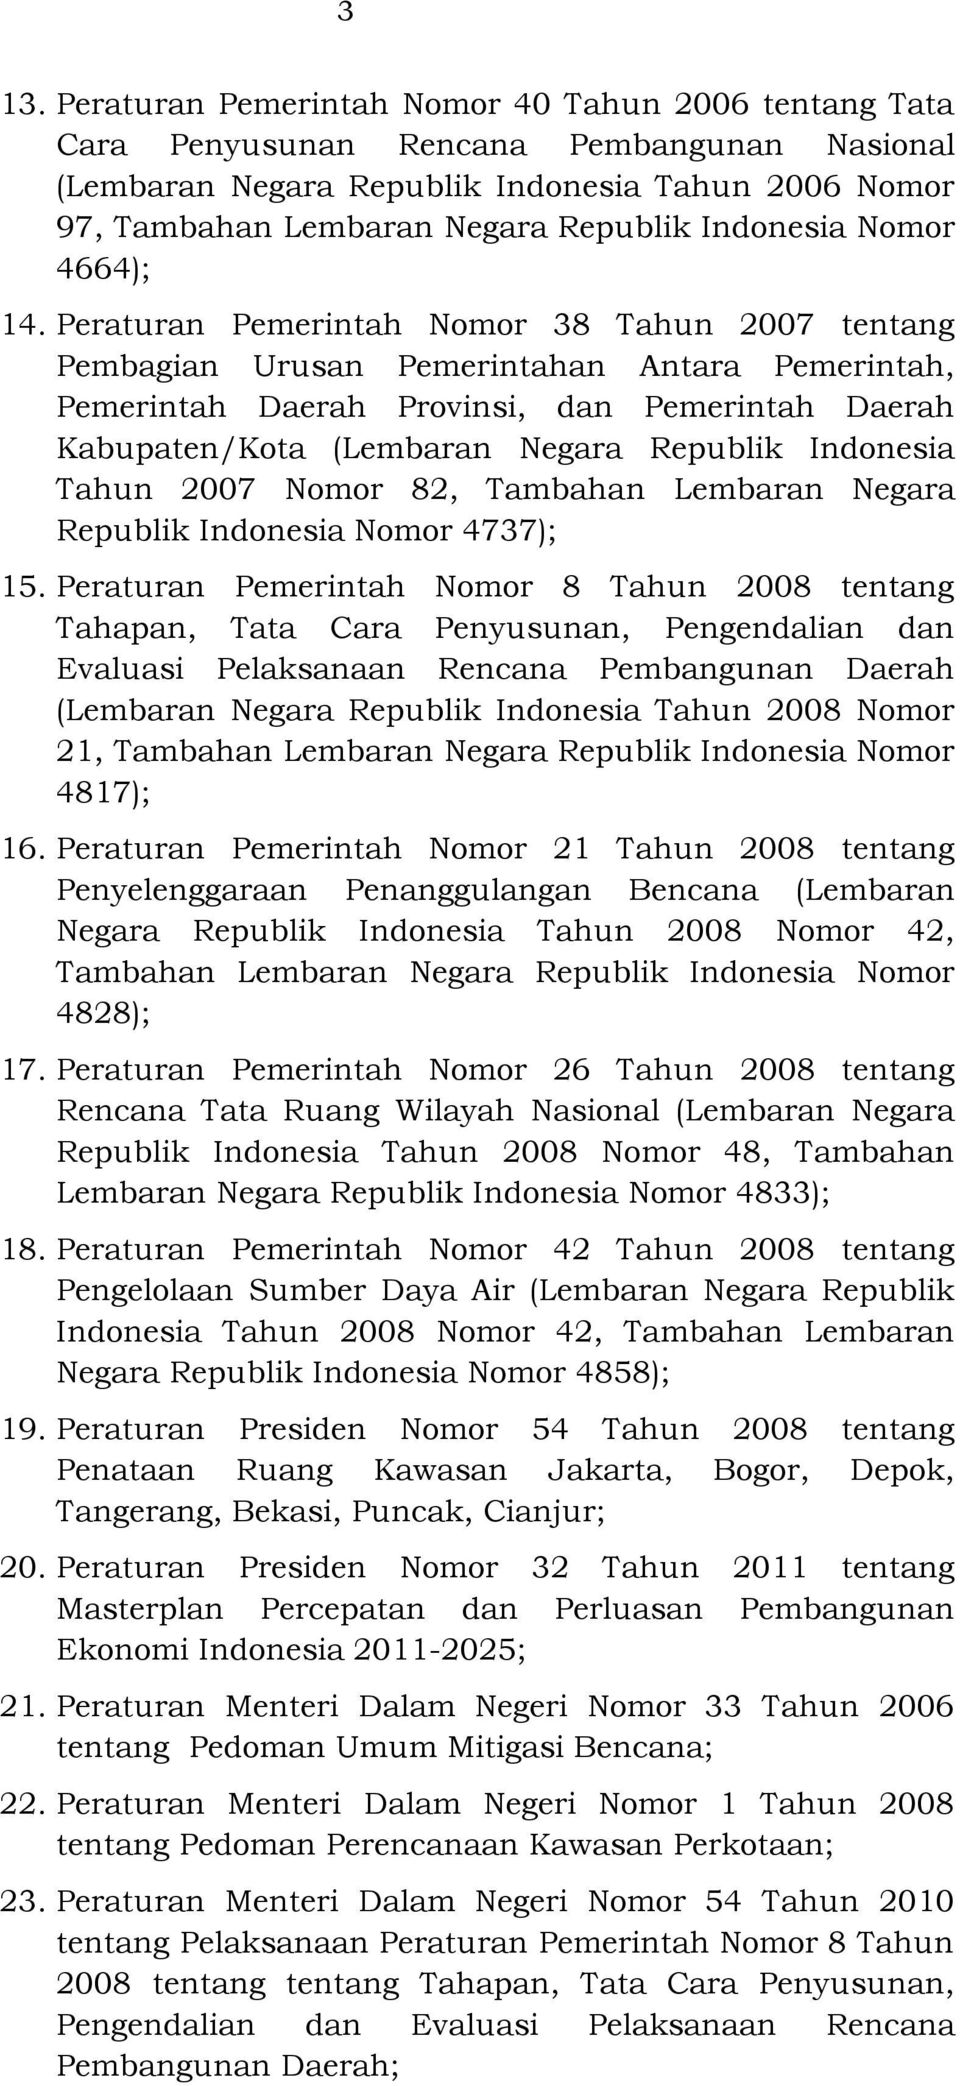 Peraturan Pemerintah Nomor 38 Tahun 2007 tentang Pembagian Urusan Pemerintahan Antara Pemerintah, Pemerintah Daerah Provinsi, dan Pemerintah Daerah Kabupaten/Kota (Lembaran Negara Republik Indonesia